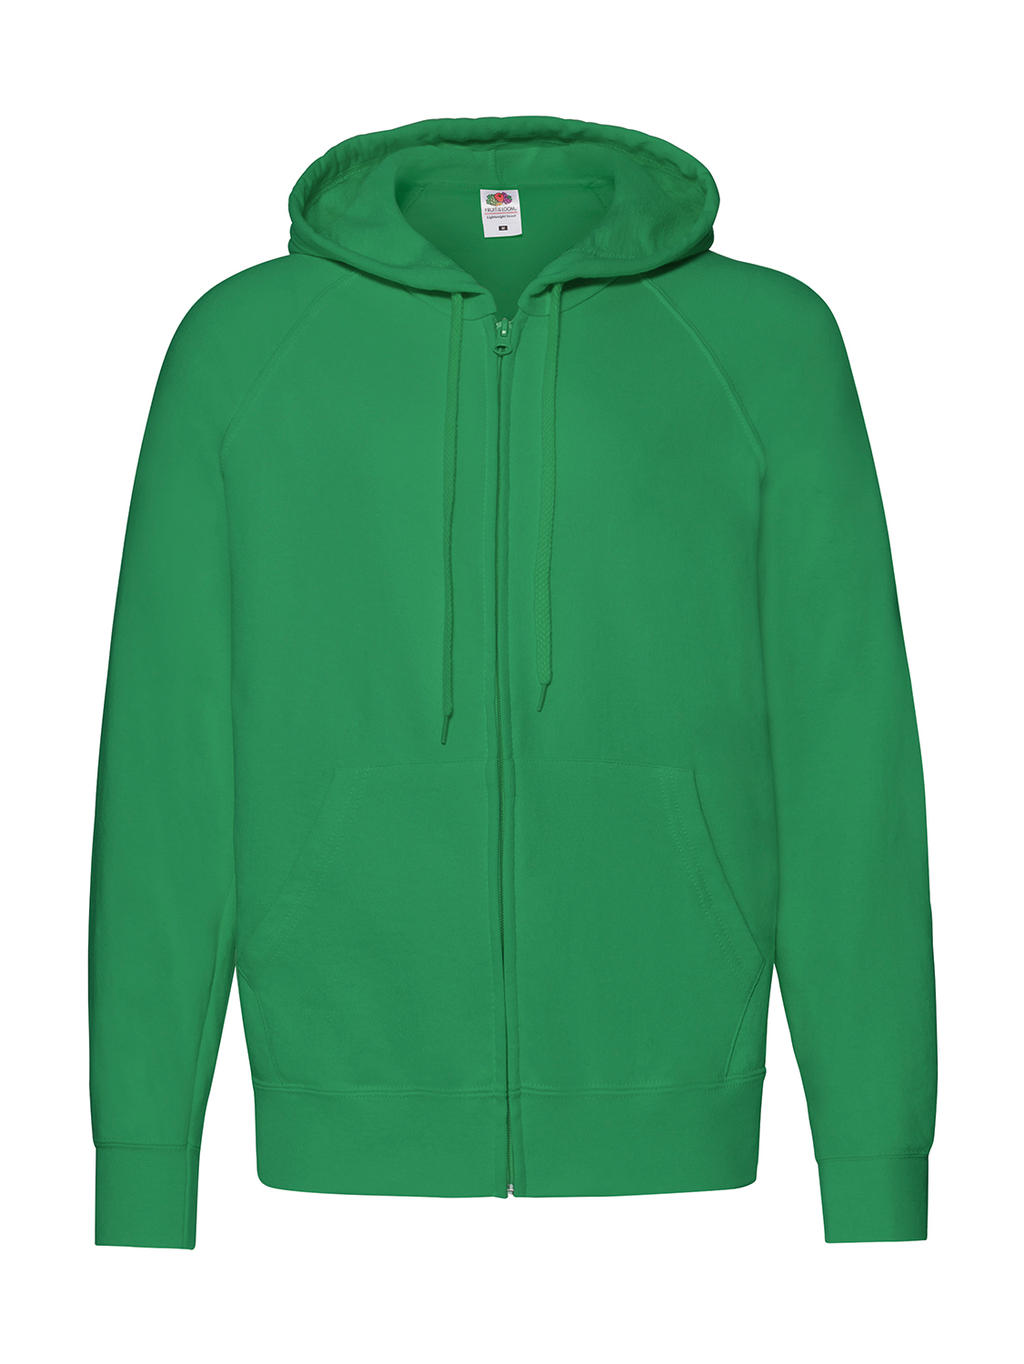  Lightweight Hooded Sweat Jacket in Farbe Kelly Green